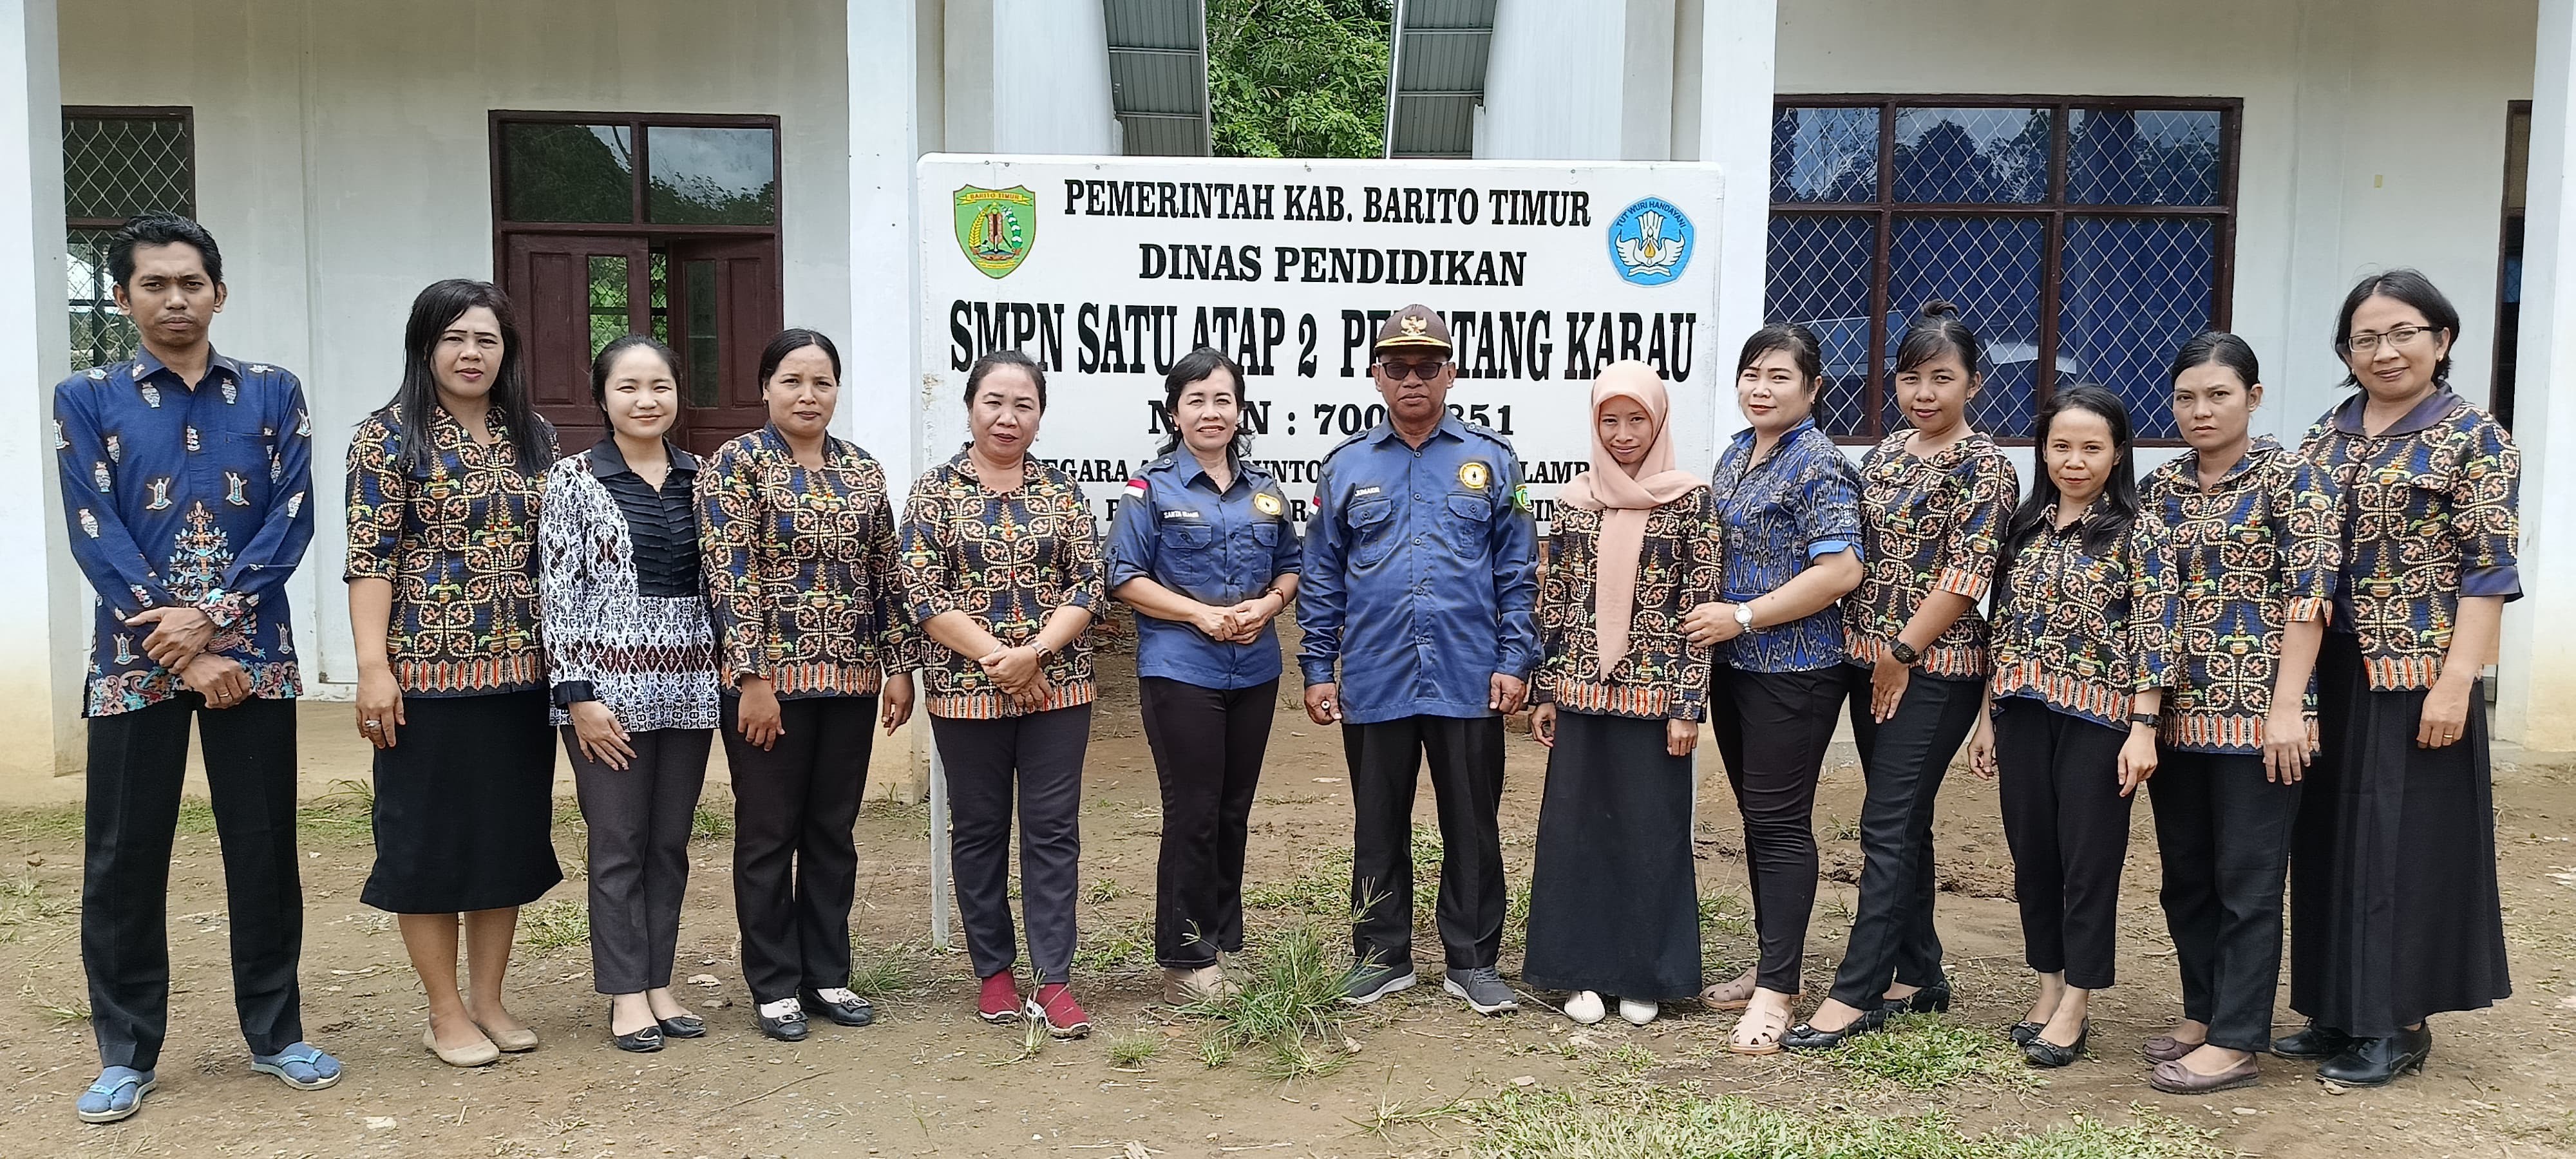 Bimbingan Teknis Pembuatan Website Personal Guru SMPN Satu Atap 2 Pematang Karau Kab. Barito Timur